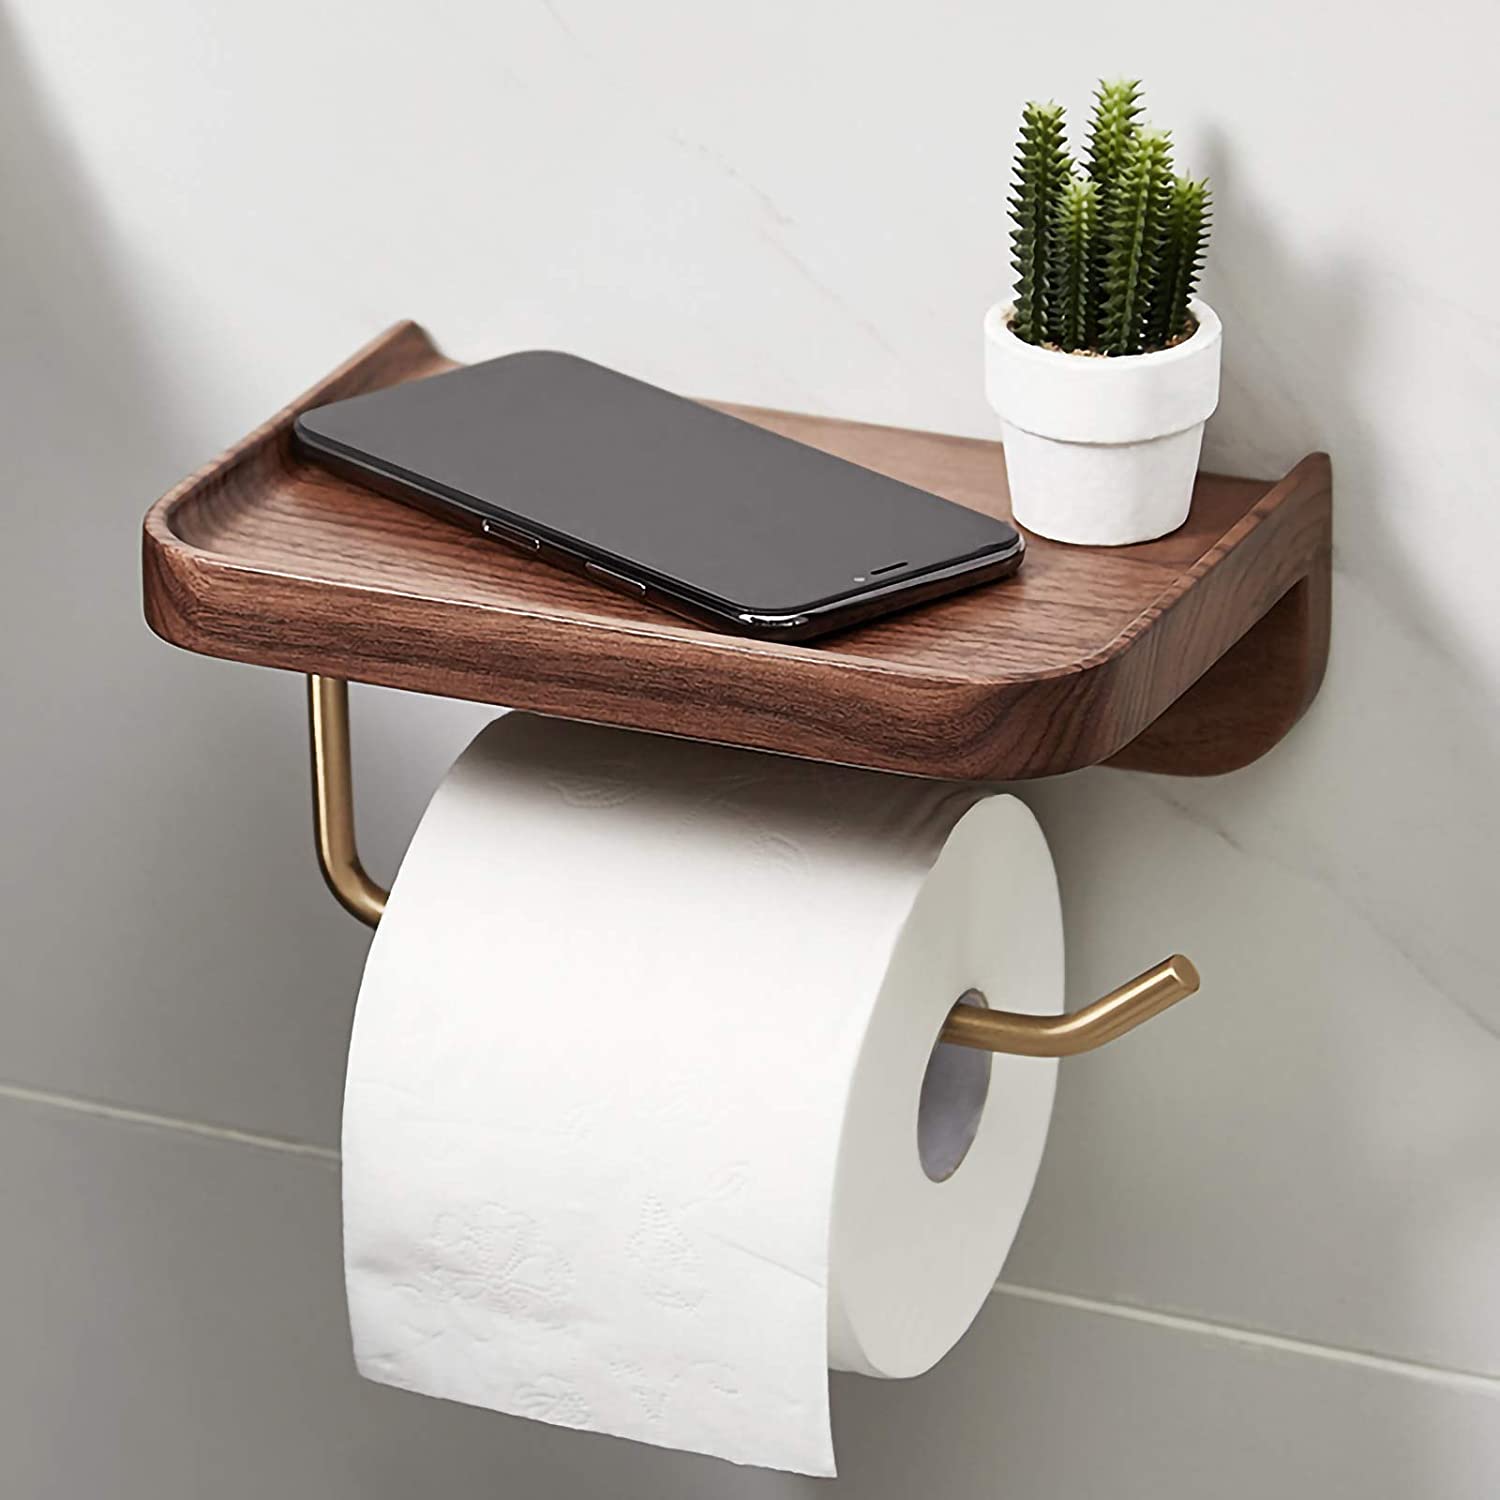 Chiếc giá đỡ điện thoại kết hợp móc treo giấy vệ sinh cho phòng tắm tiện ích hơn.